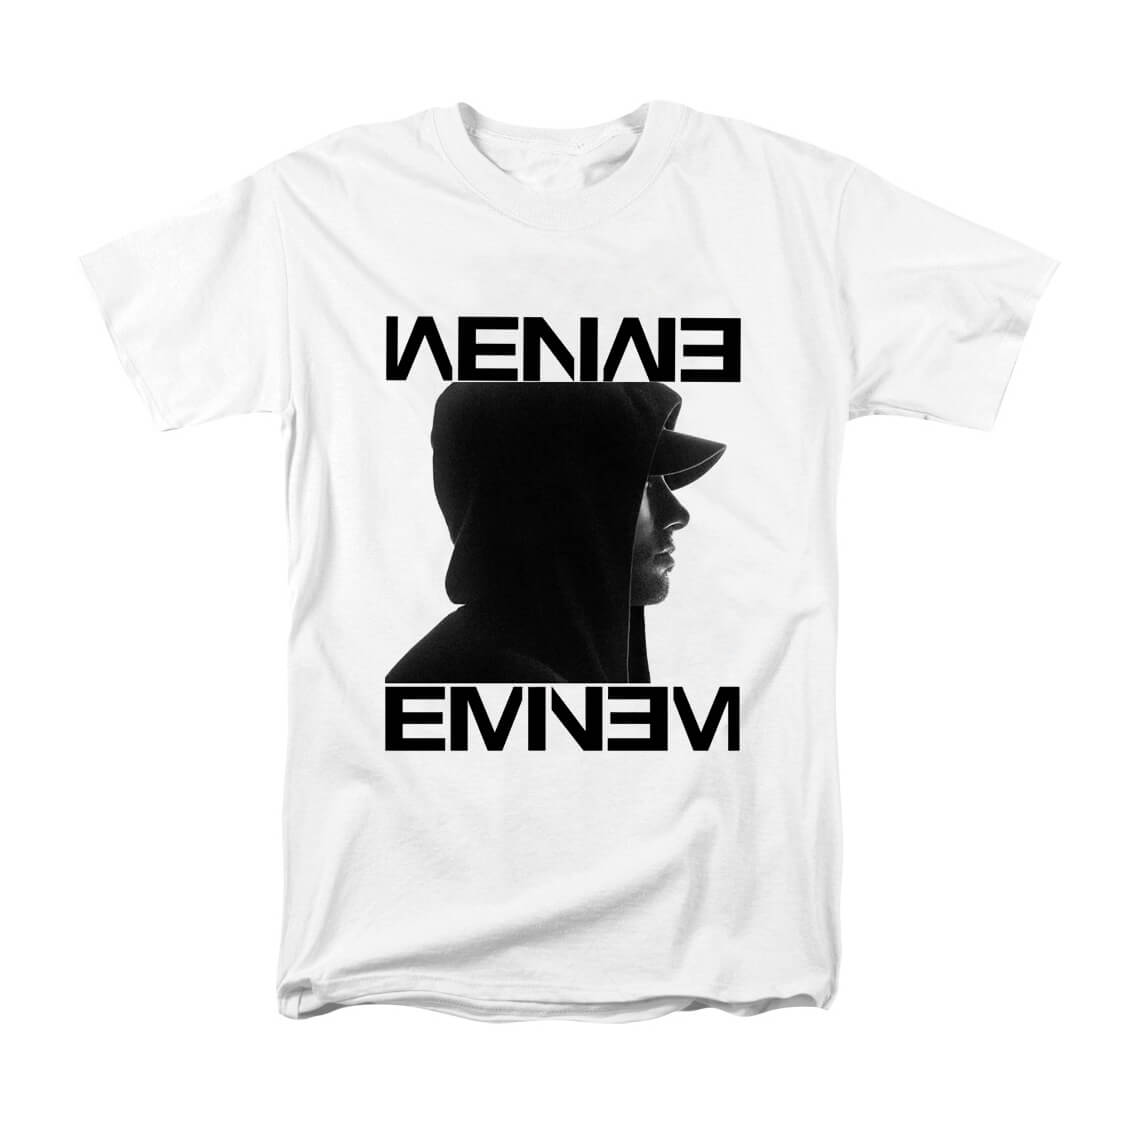 Graphic Tees Eminem T-Shirt | WISHINY